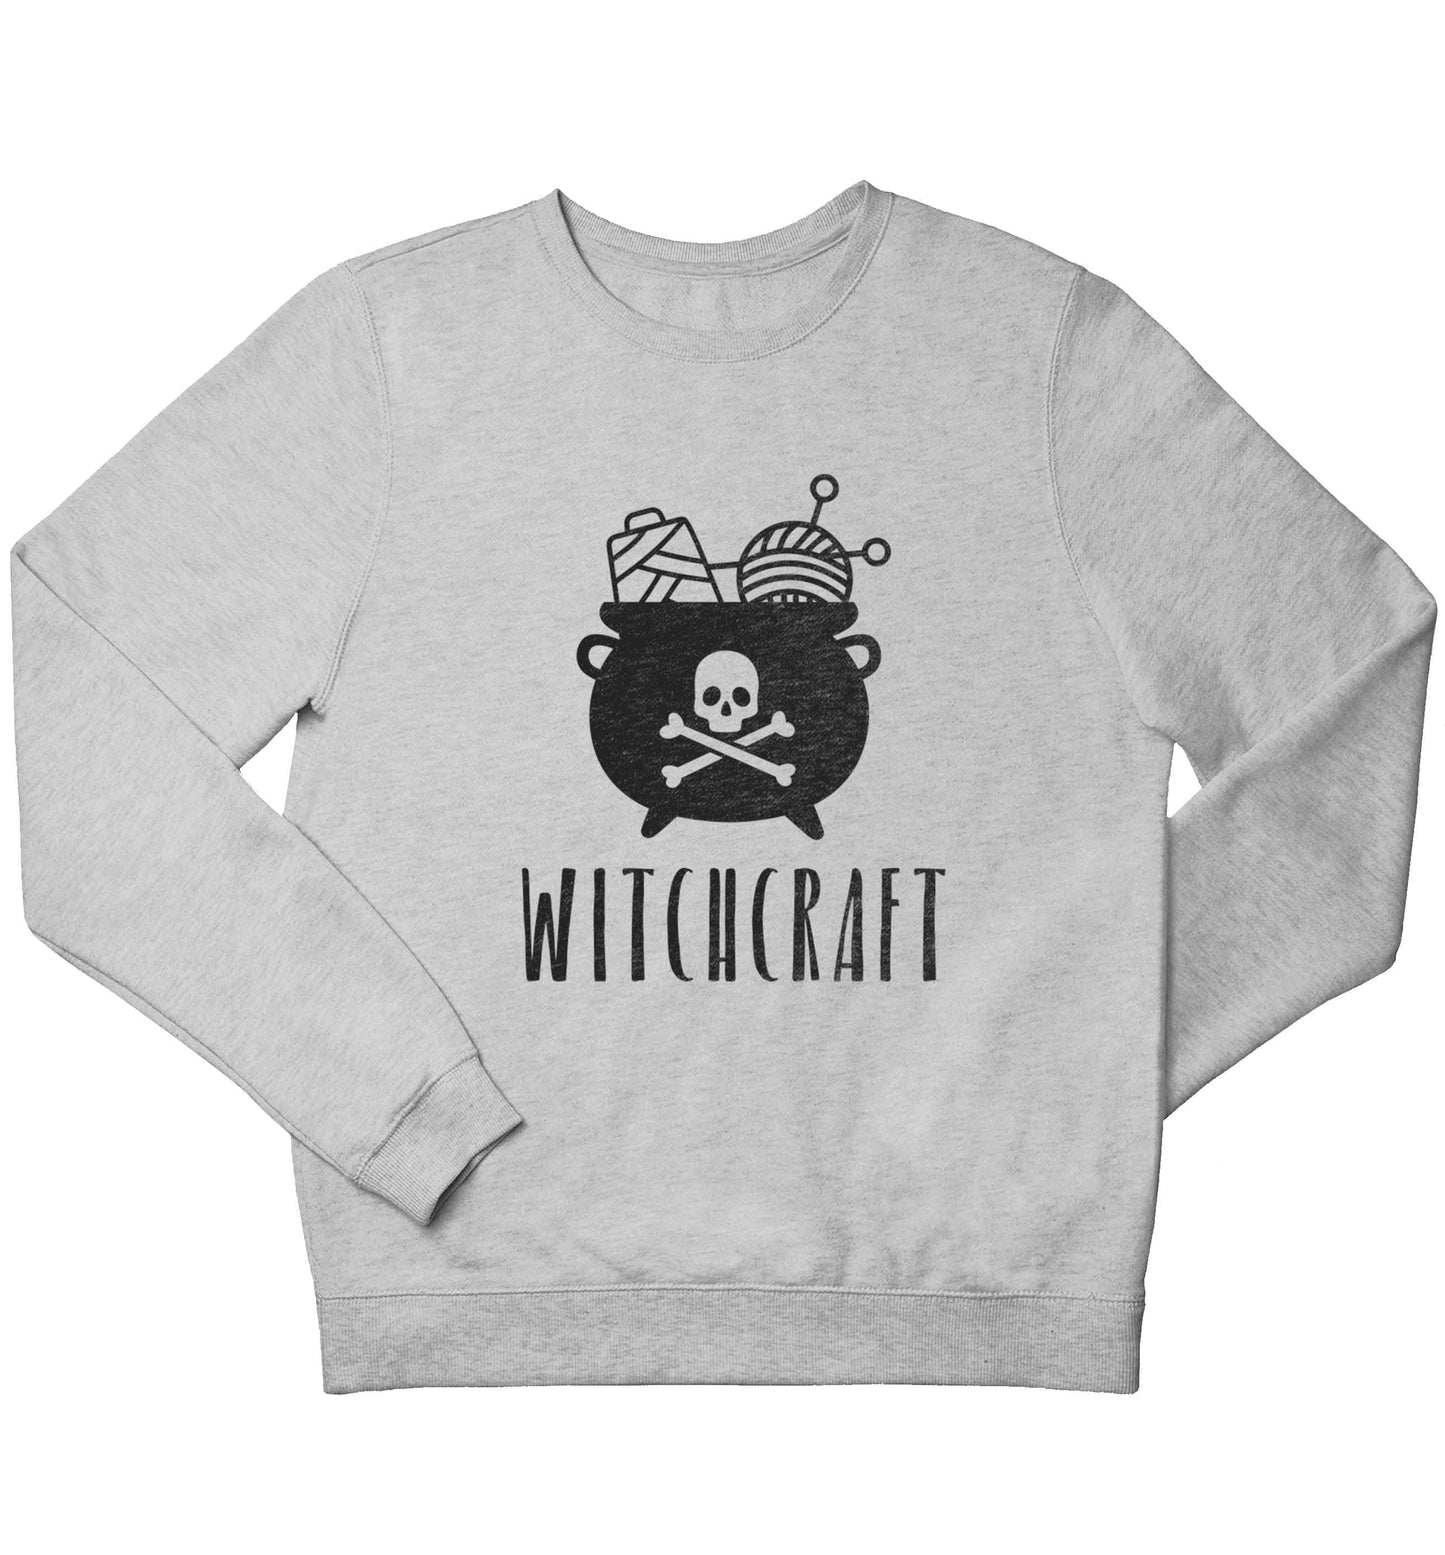 Witchcraft children's grey sweater 12-13 Years